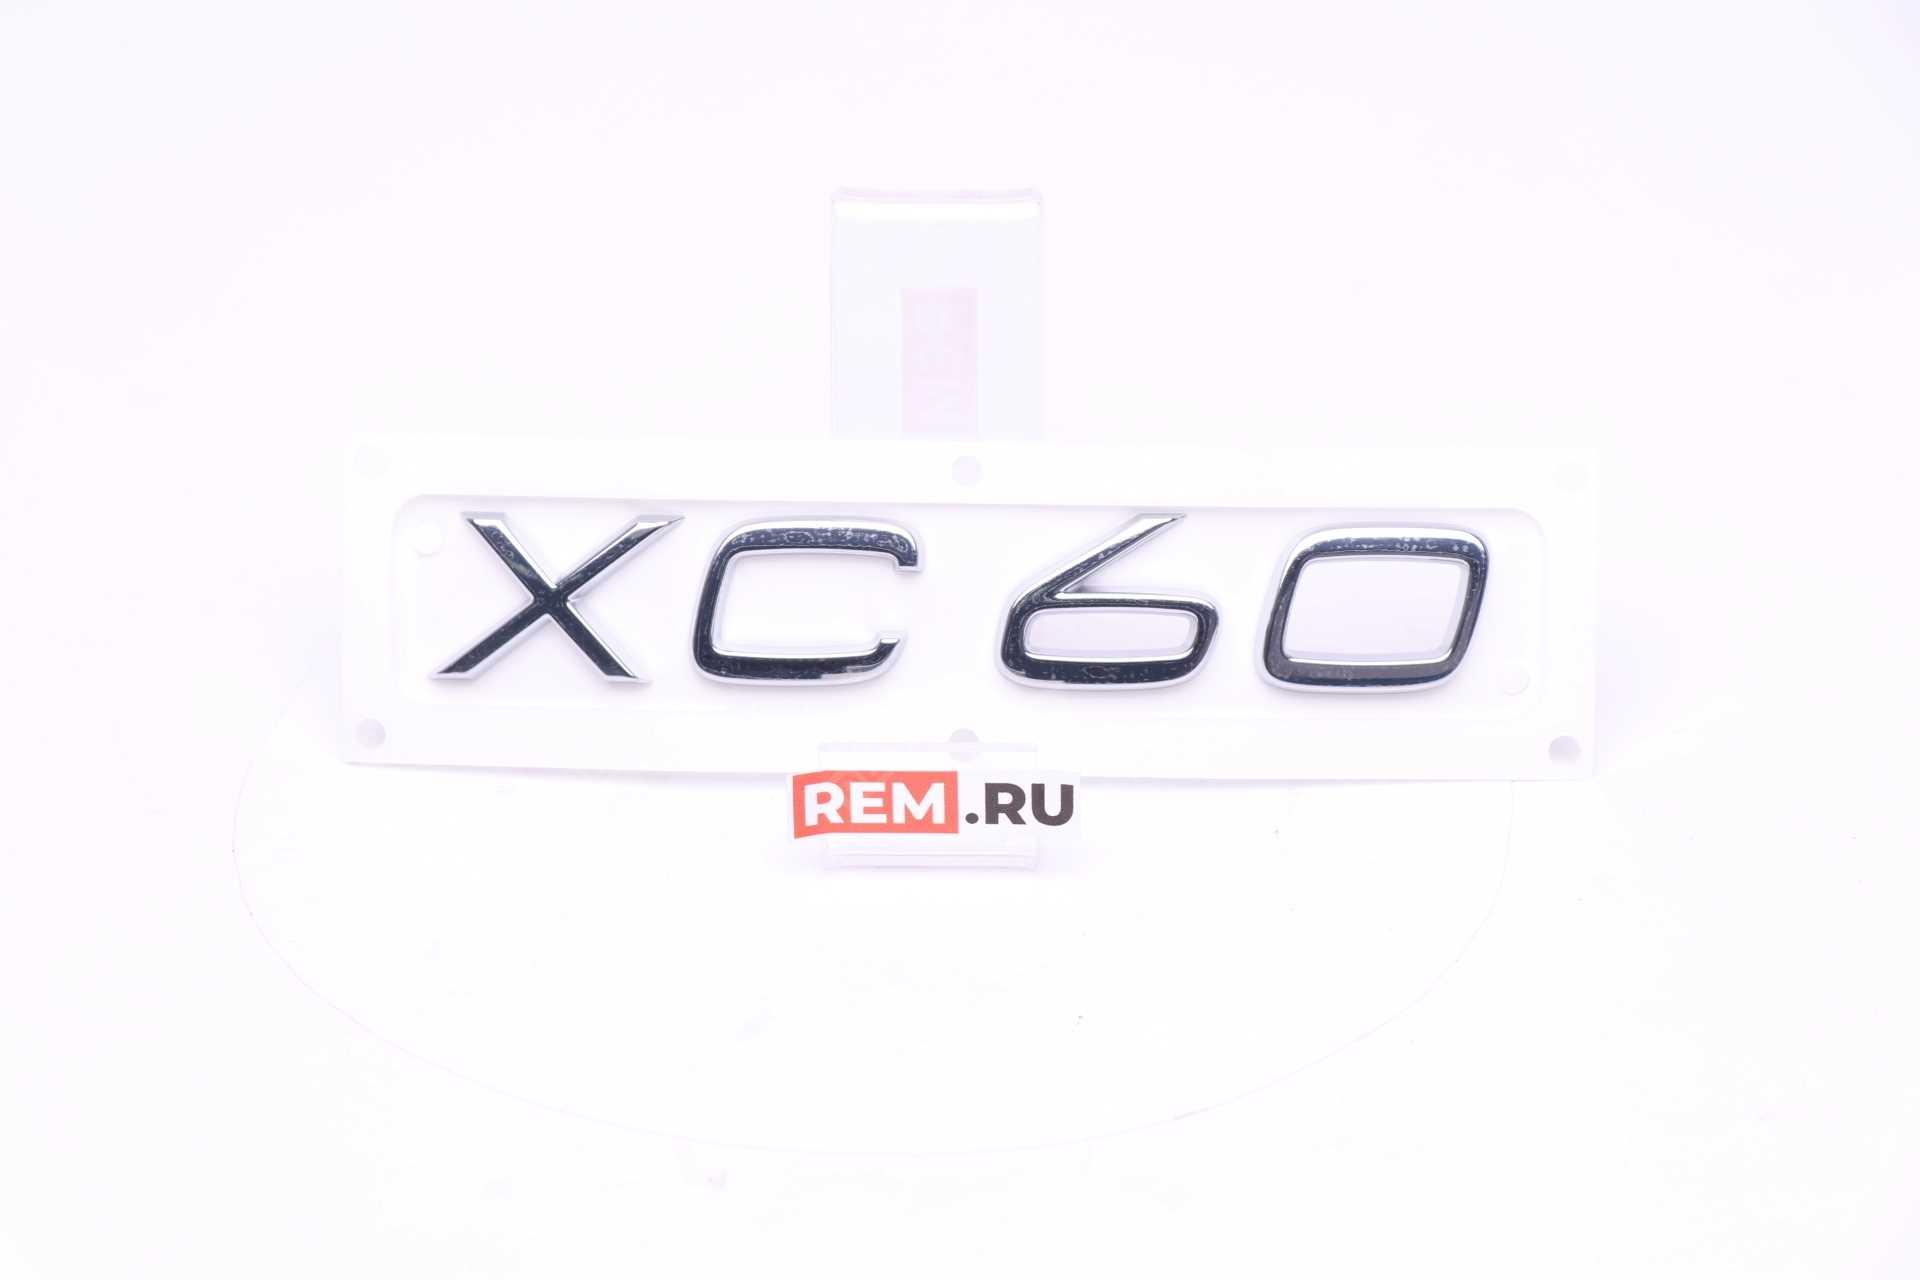  31333640  эмблема "xc60" (фото 1)